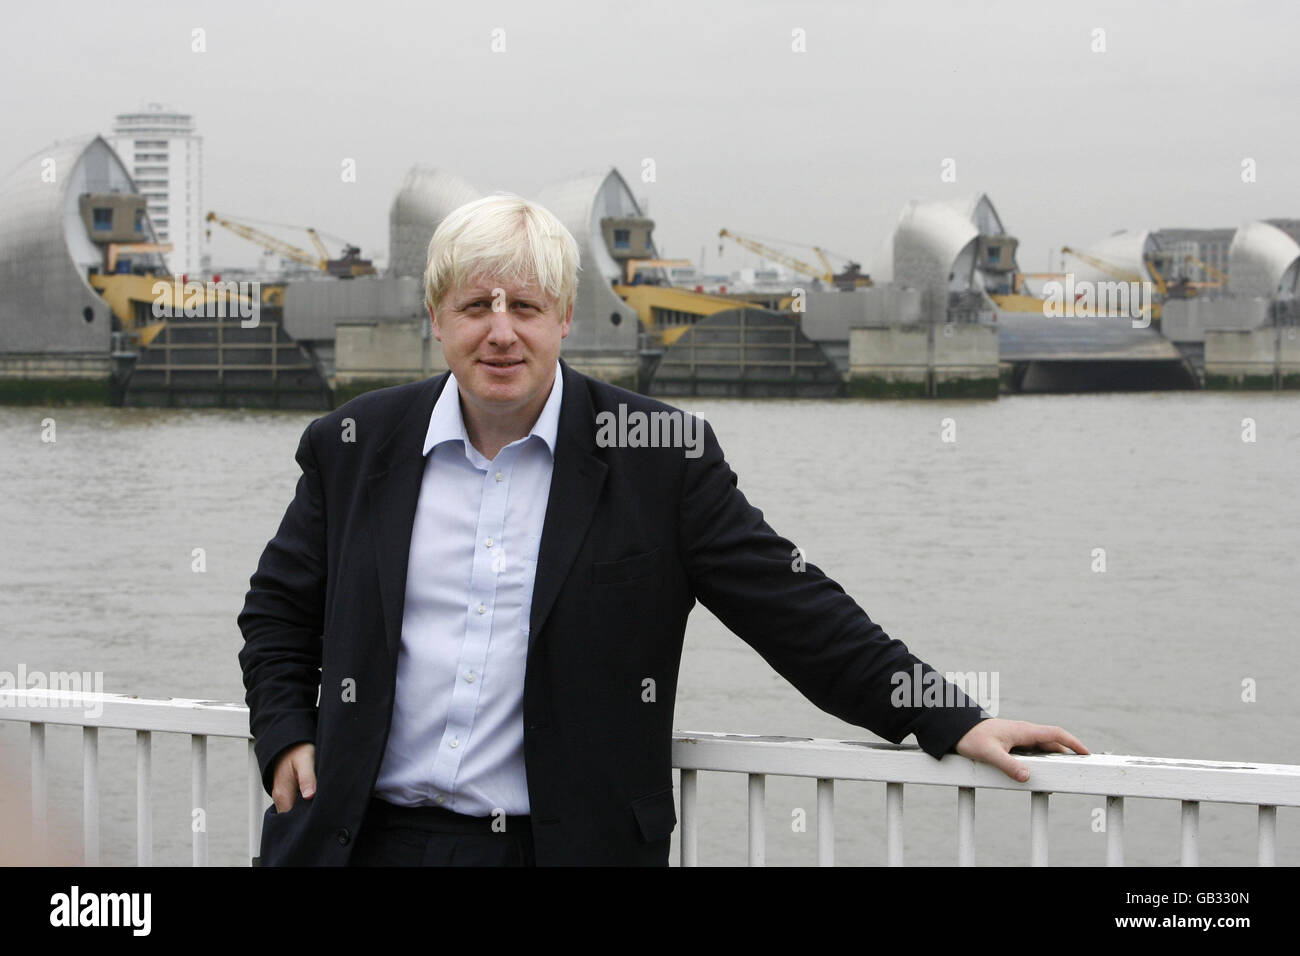 Der Bürgermeister von London, Boris Johnson, startet die Londoner Klimaanpassungsstrategie der Themse Barrier im Osten Londons. Stockfoto